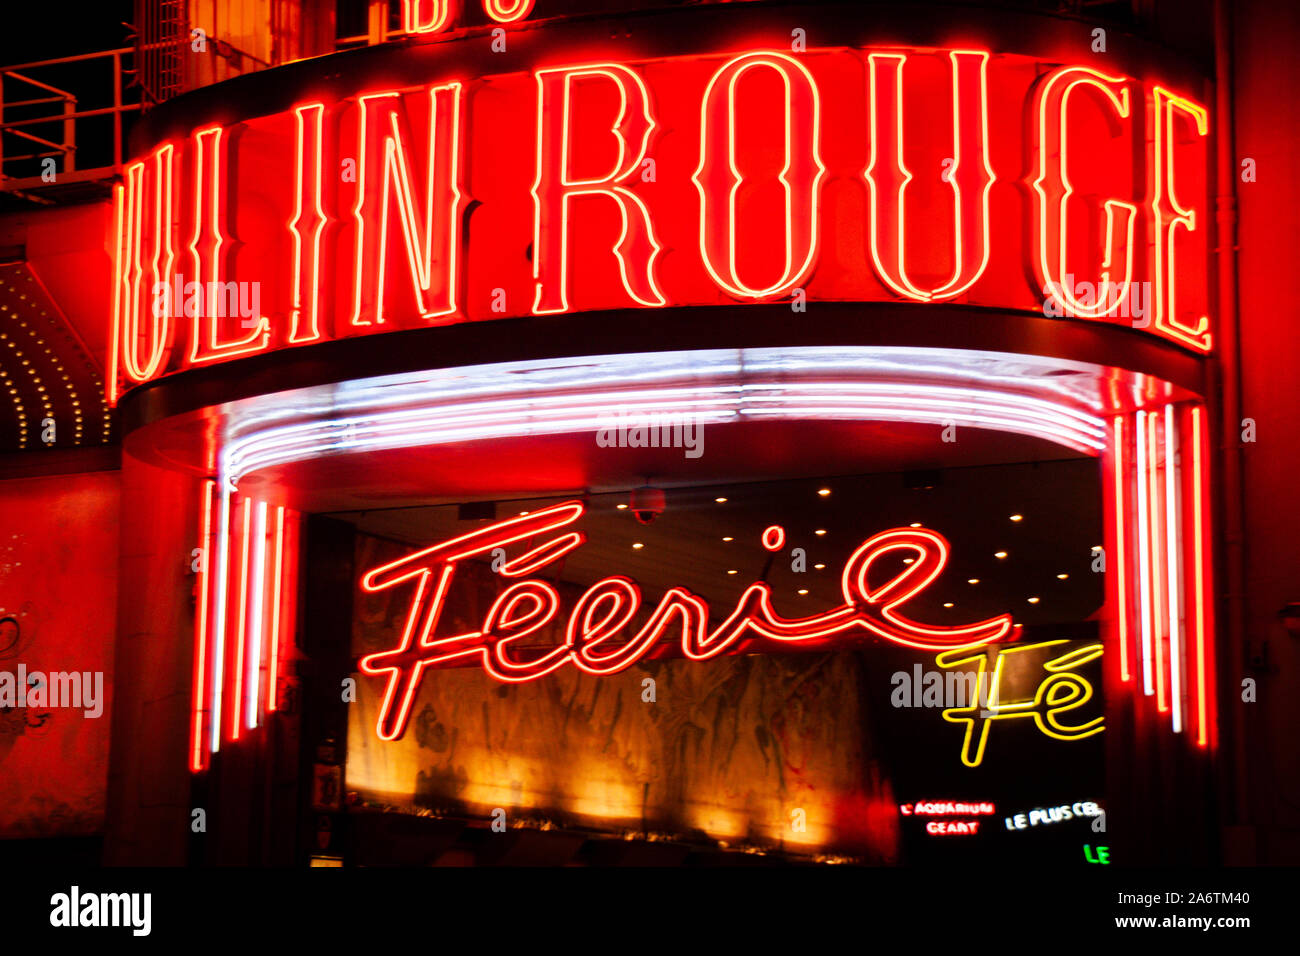 Vista frontal de letreros de neón de cabaret del Moulin Rouge en París, Francia, por la noche - tubo fluorescente rojo - cartas de disparo Horizontal del teatro principal ent Foto de stock